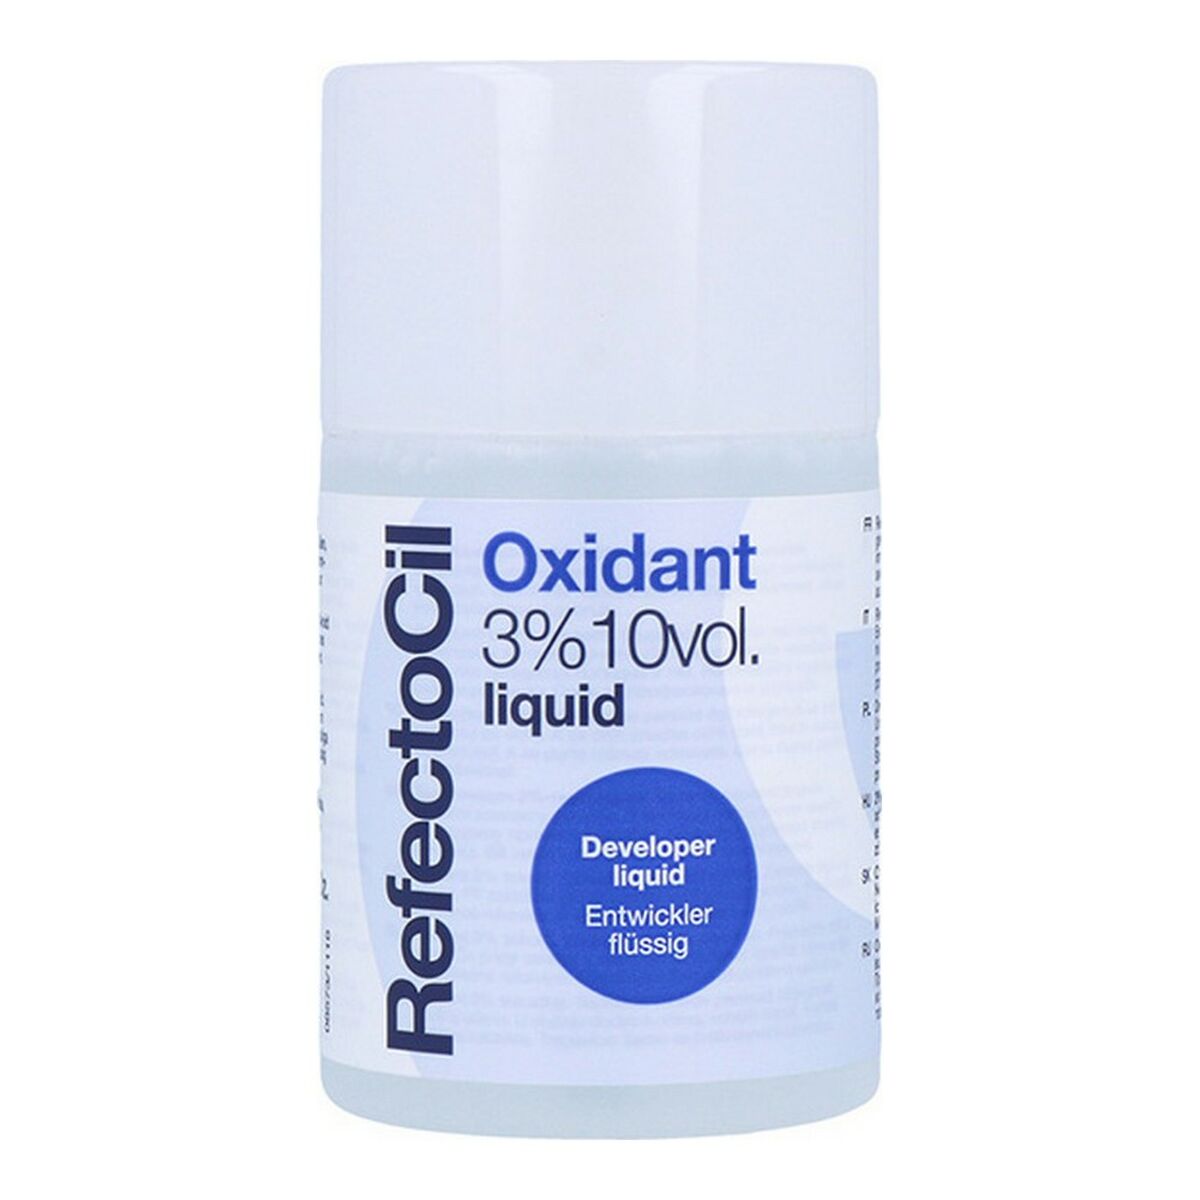 Hair Oxidizer RefectoCil 0501044 10 Vol 3 % 100 ml (100 ml)